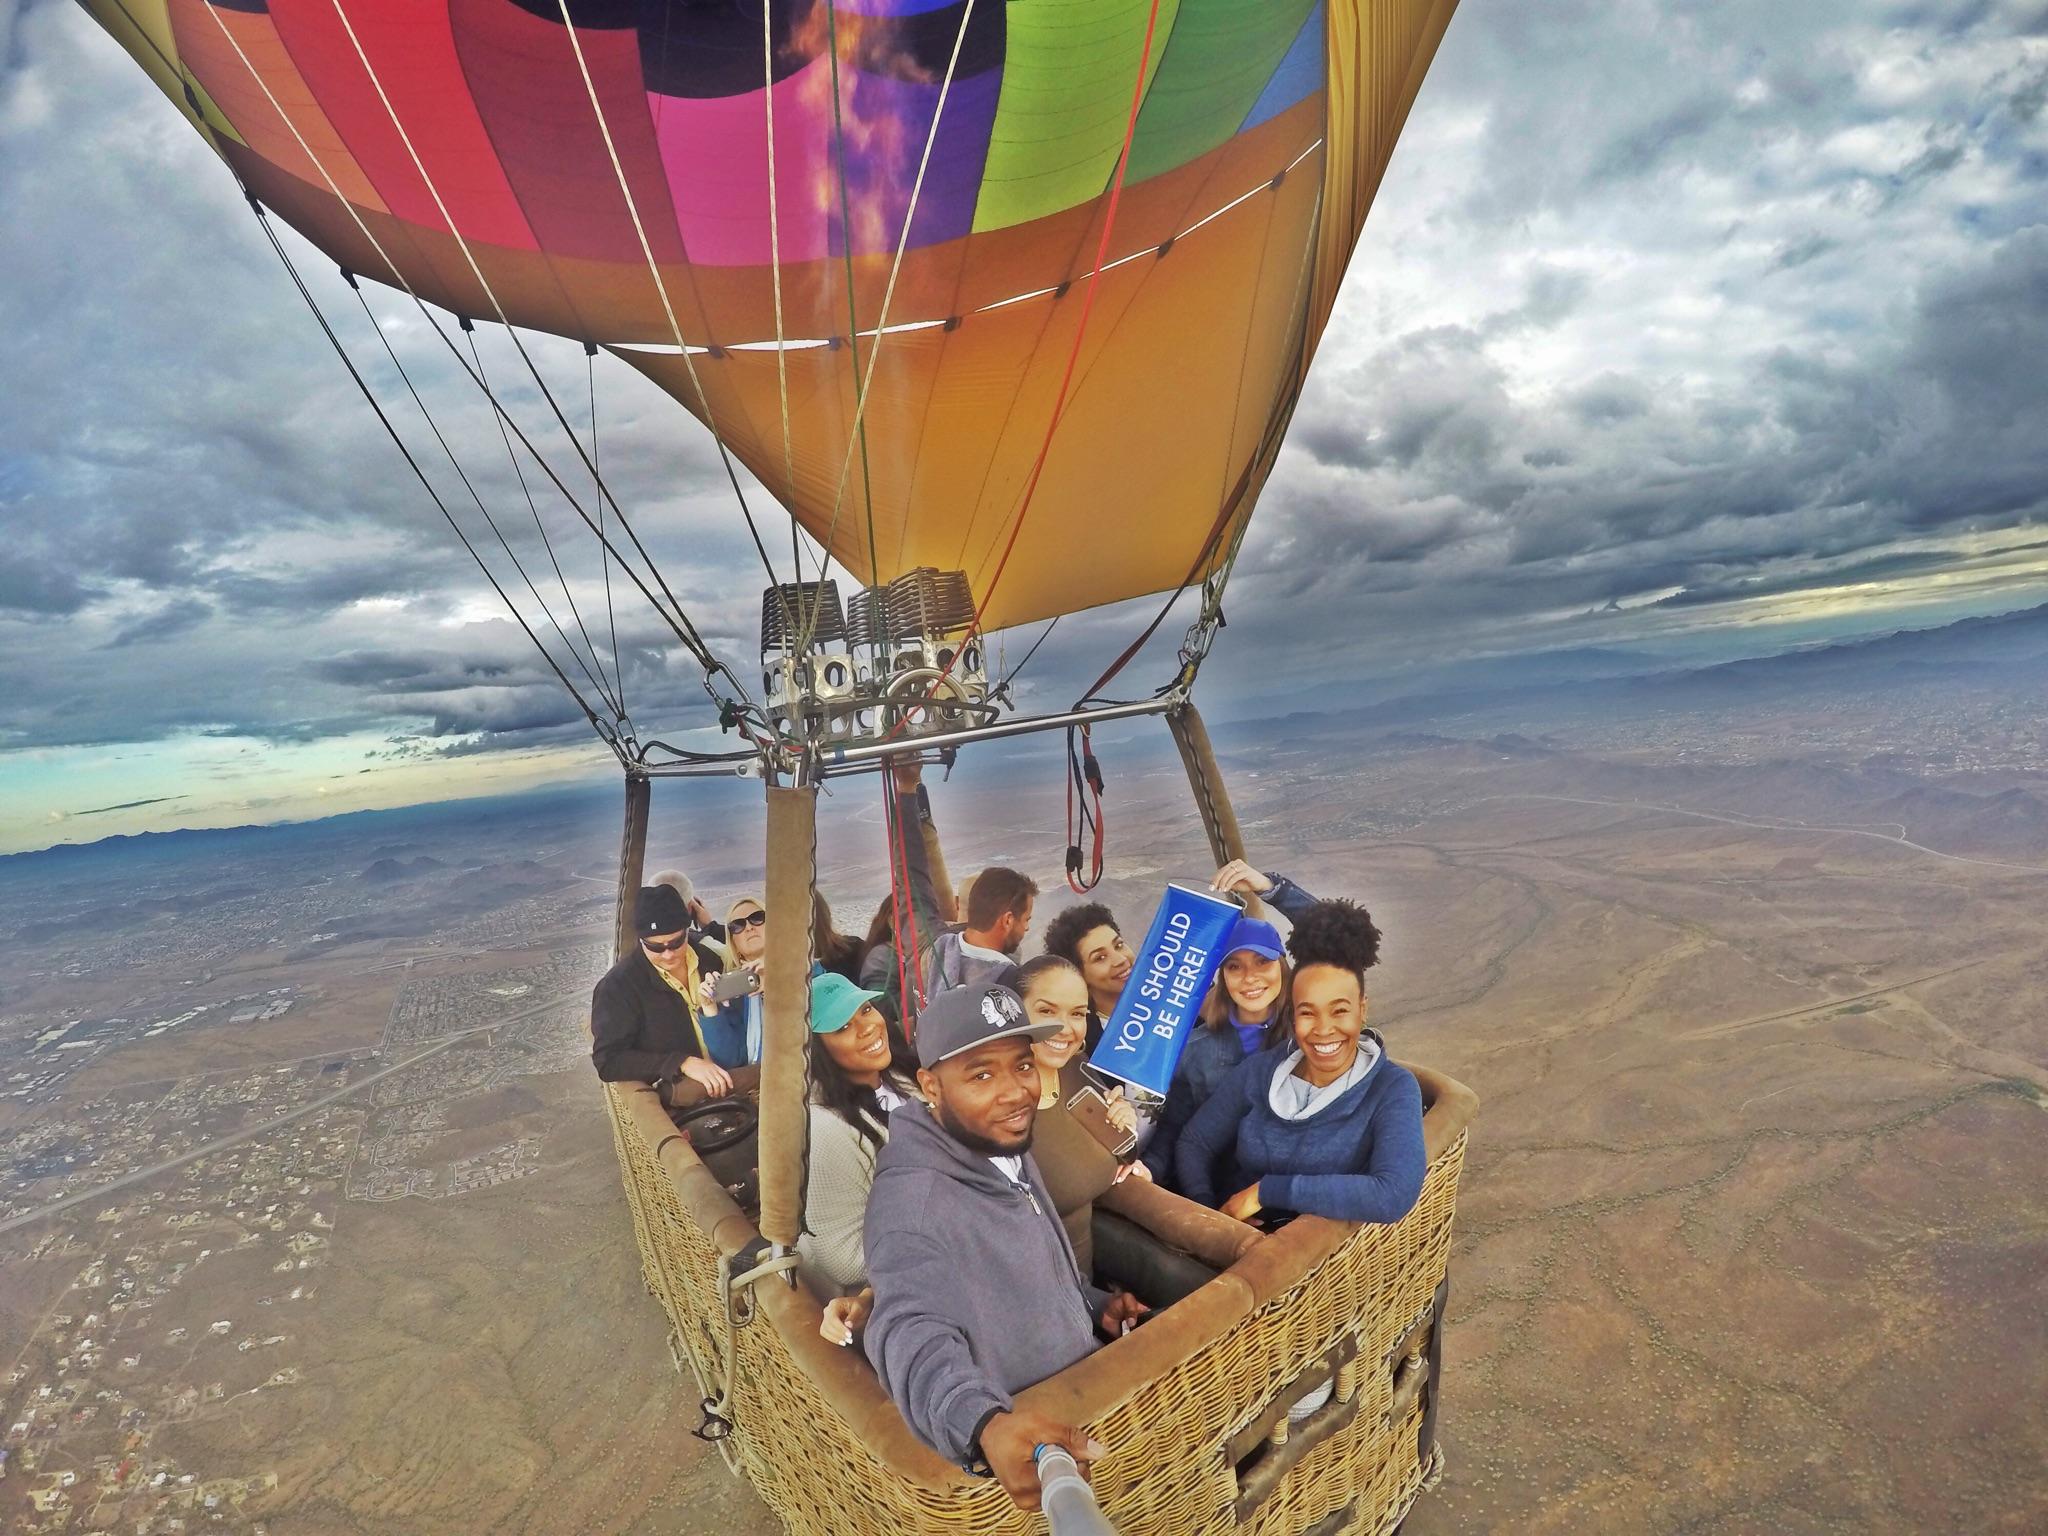 Photos & Pictures for Albuquerque Hot Air Balloon Rides - Aerogelic Bal...